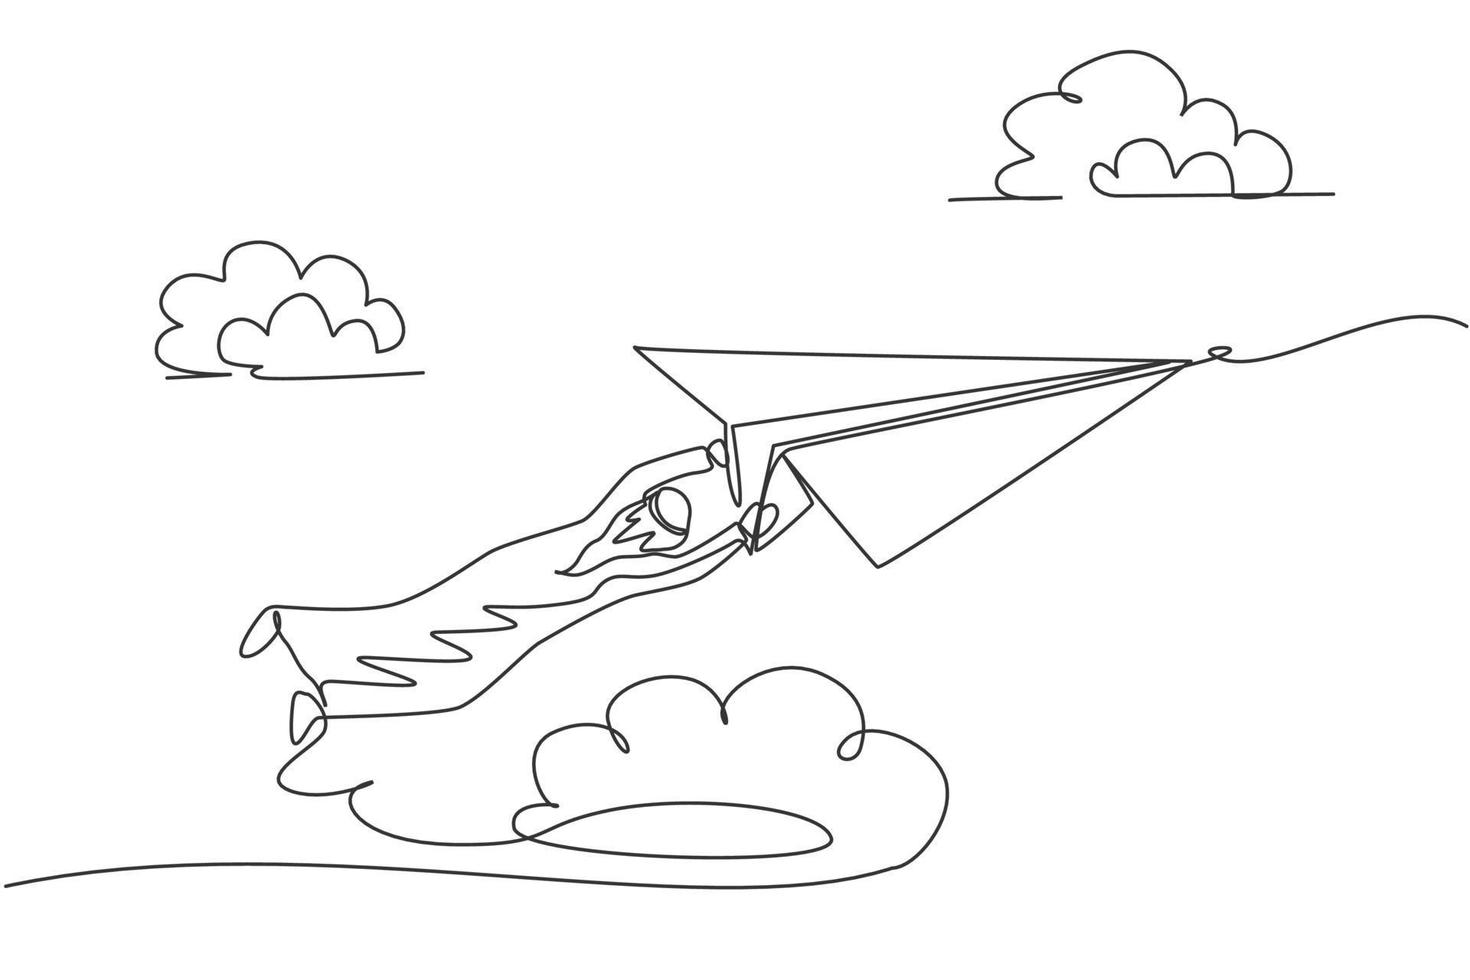 enkele lijntekening van een jonge Arabische zakenman die strak op een papieren vliegtuigje hangt. zakelijke uitdaging minimale metafoor concept. moderne doorlopende lijn tekenen ontwerp grafische vectorillustratie vector